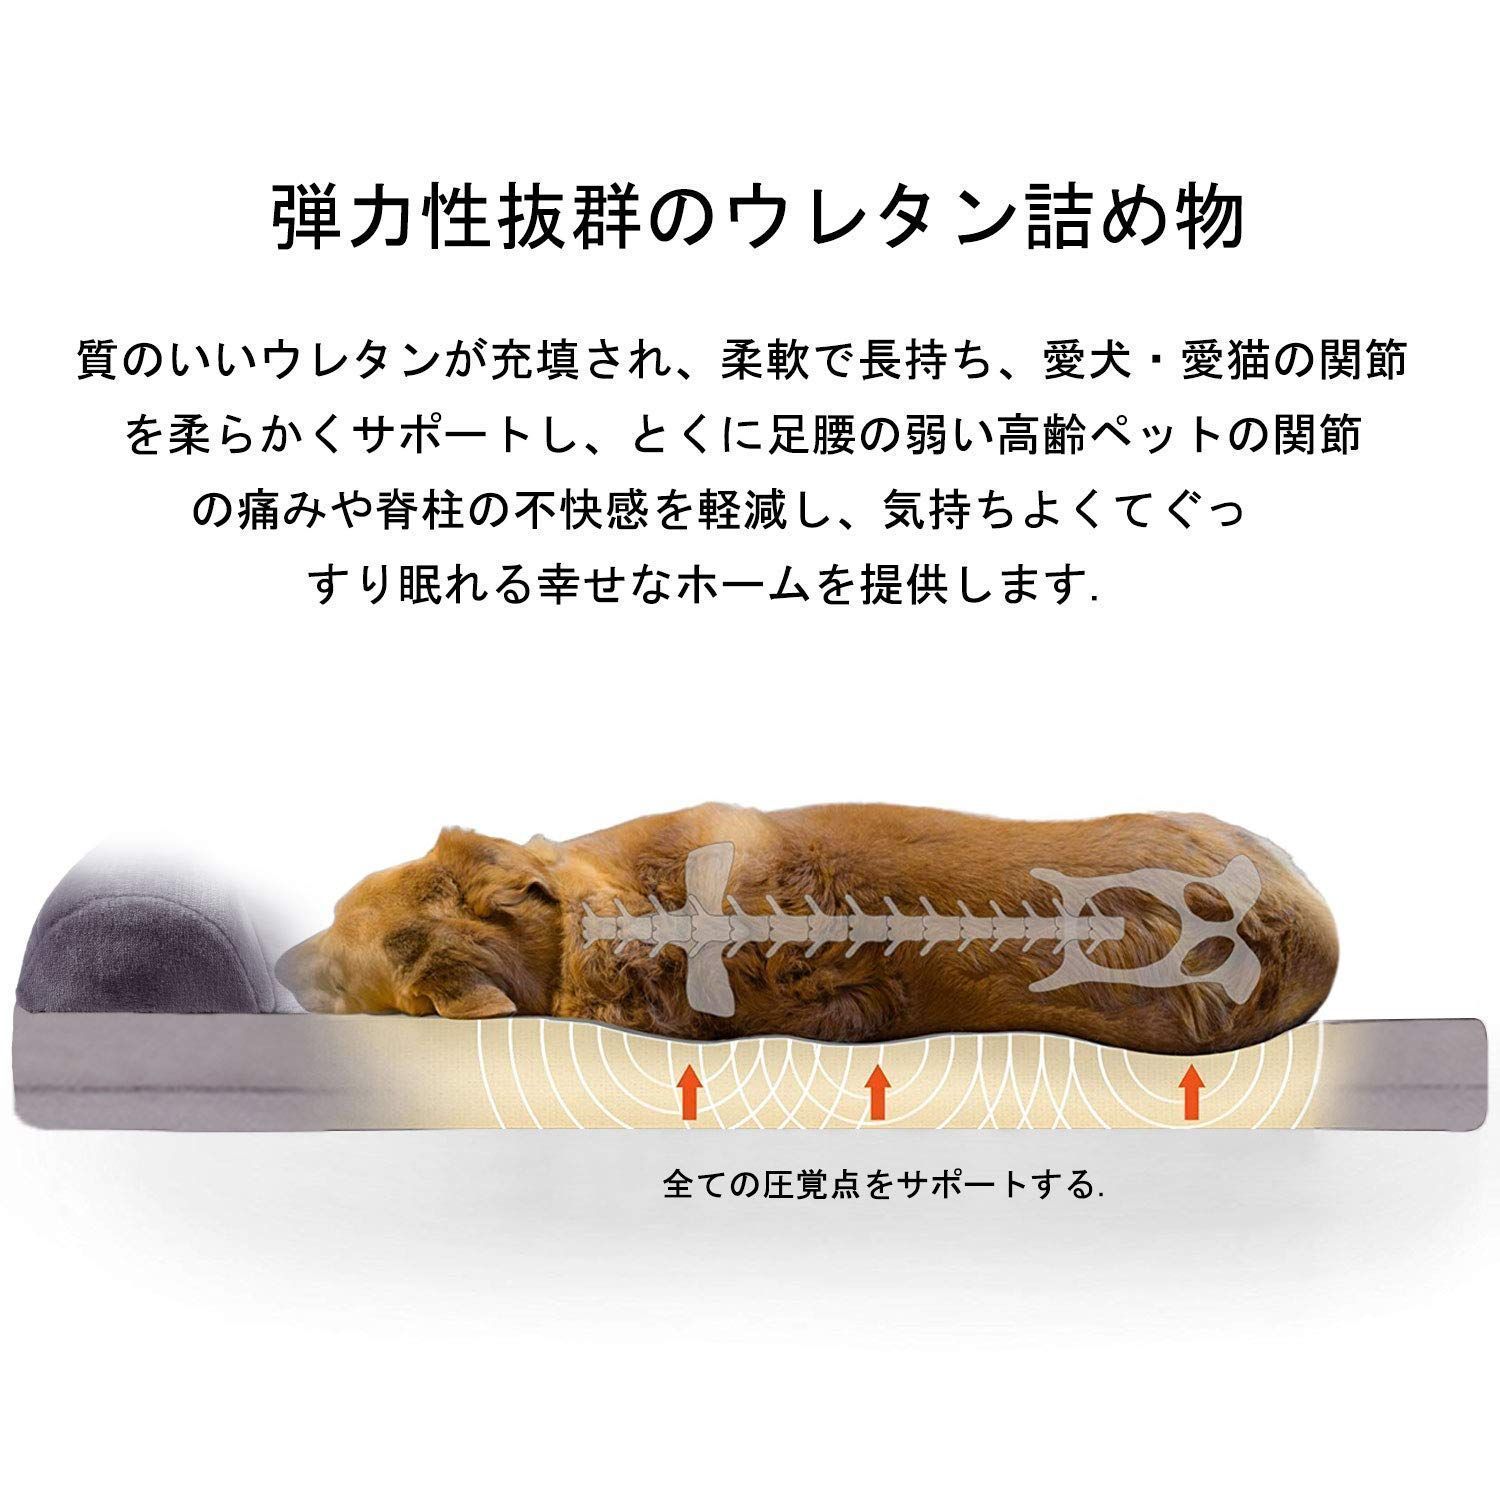 新着商品】JoicyCo 犬 ベッド 犬用ベッド 犬ベッド大型犬 クーラー室